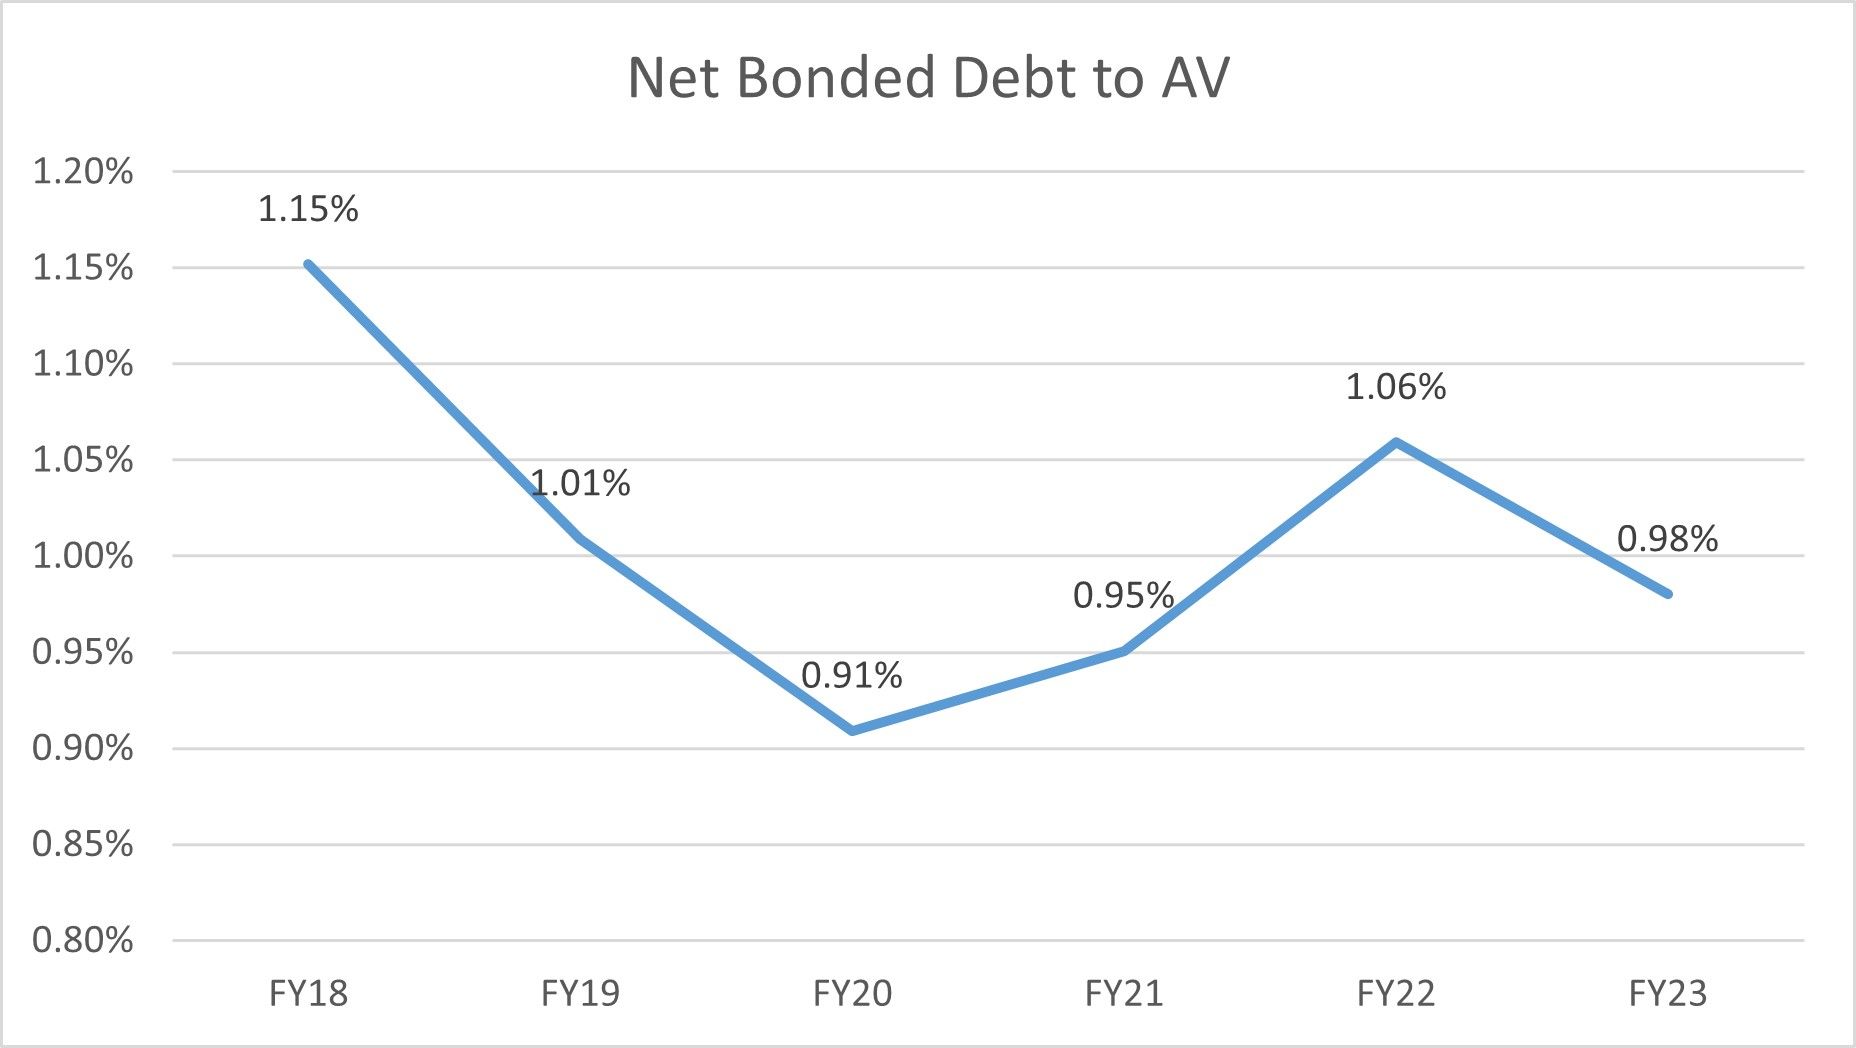 NB Debt to AV